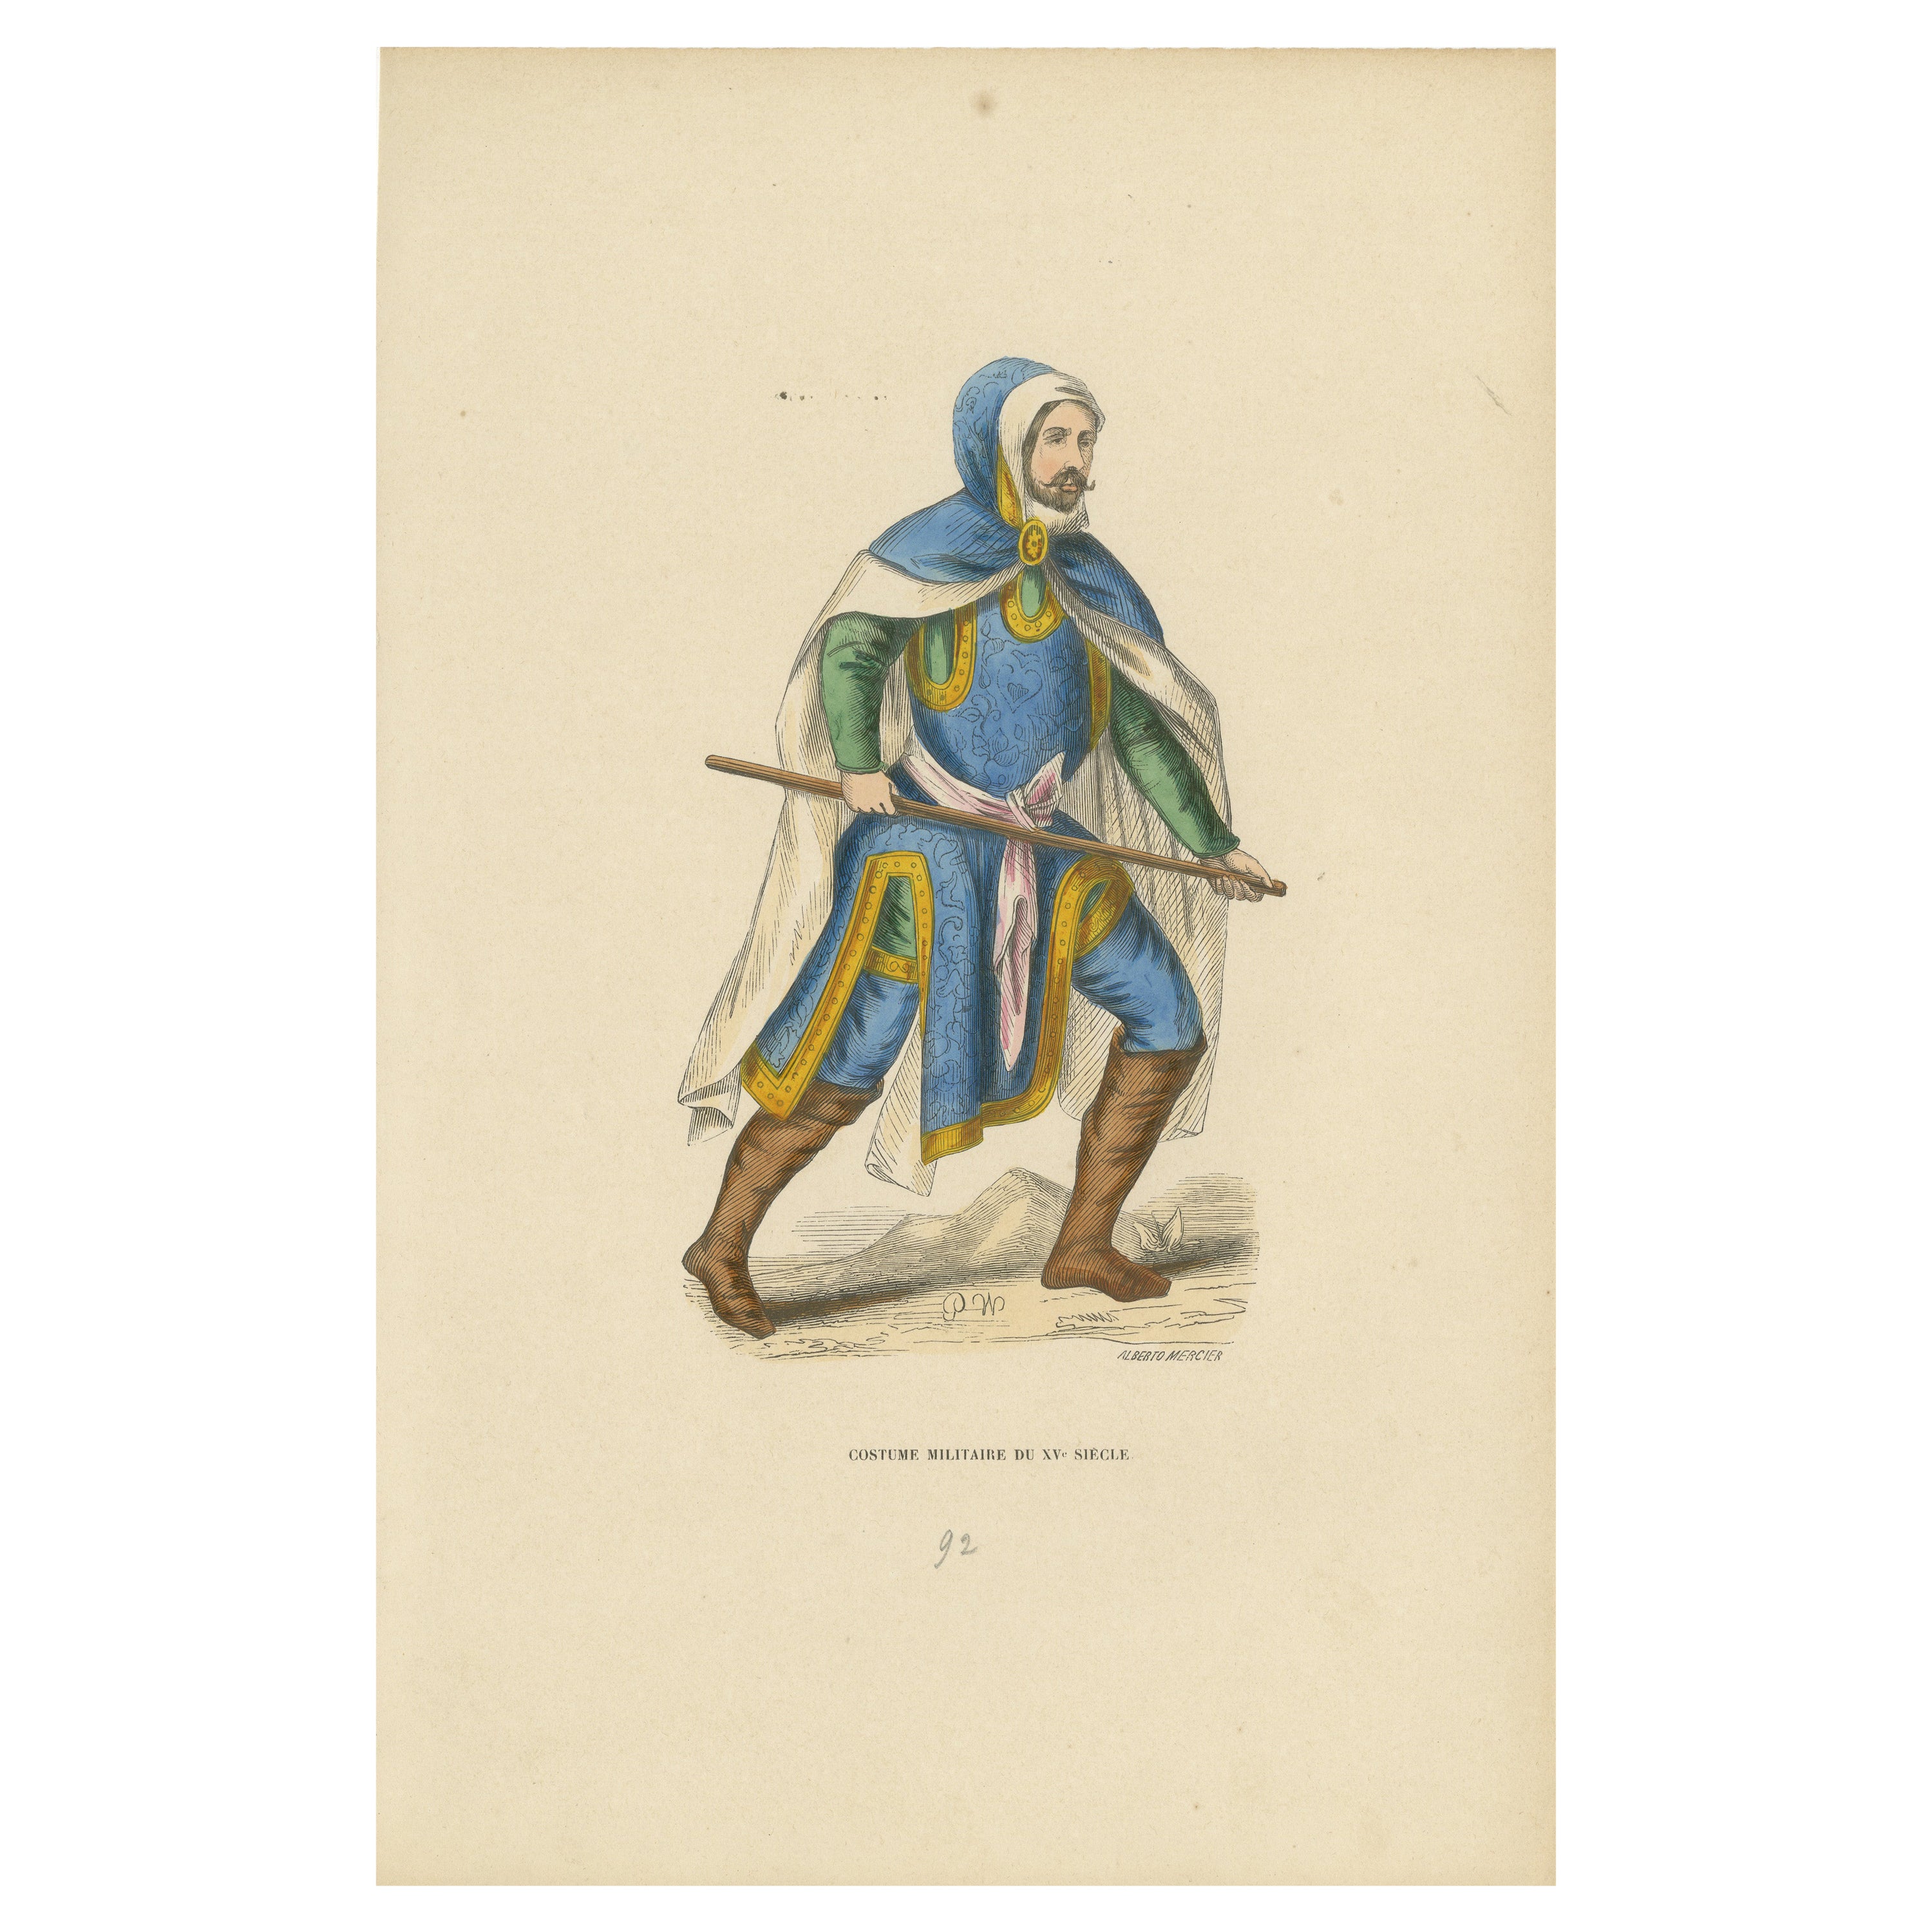 igilance en bleu : garde militaire du 15e siècle, 1847